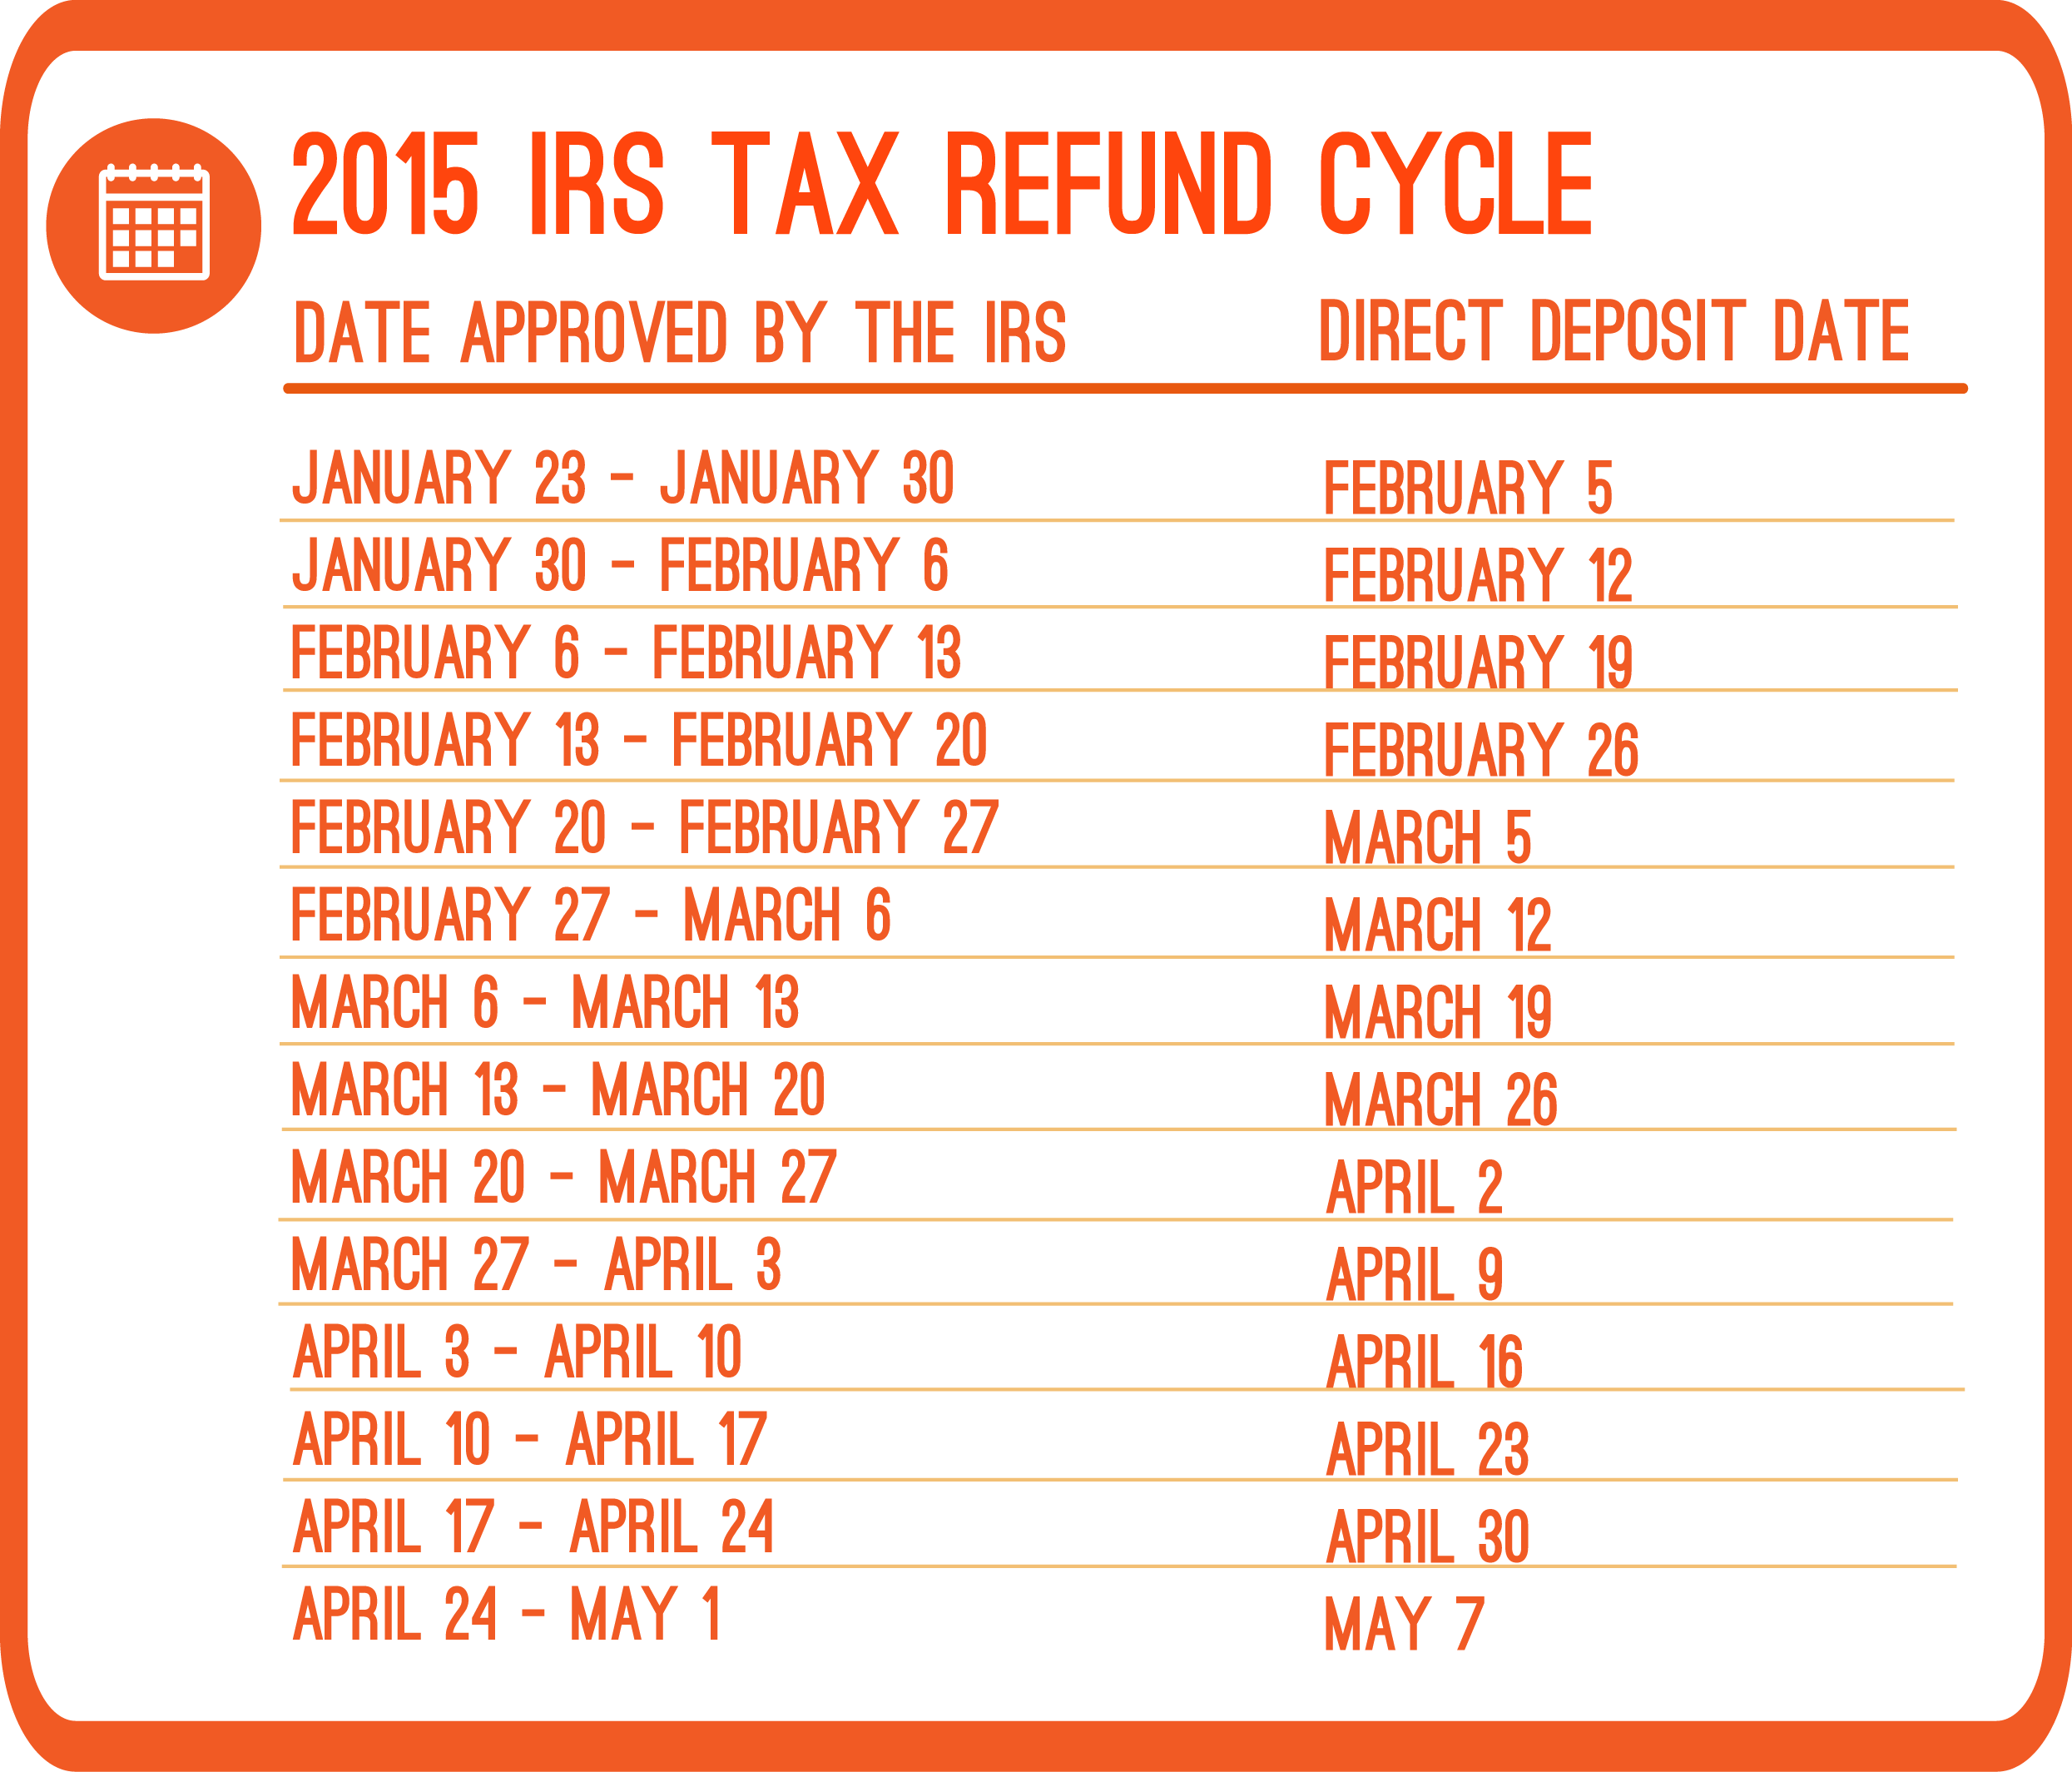 Irs Refund Schedule 2018 Chart